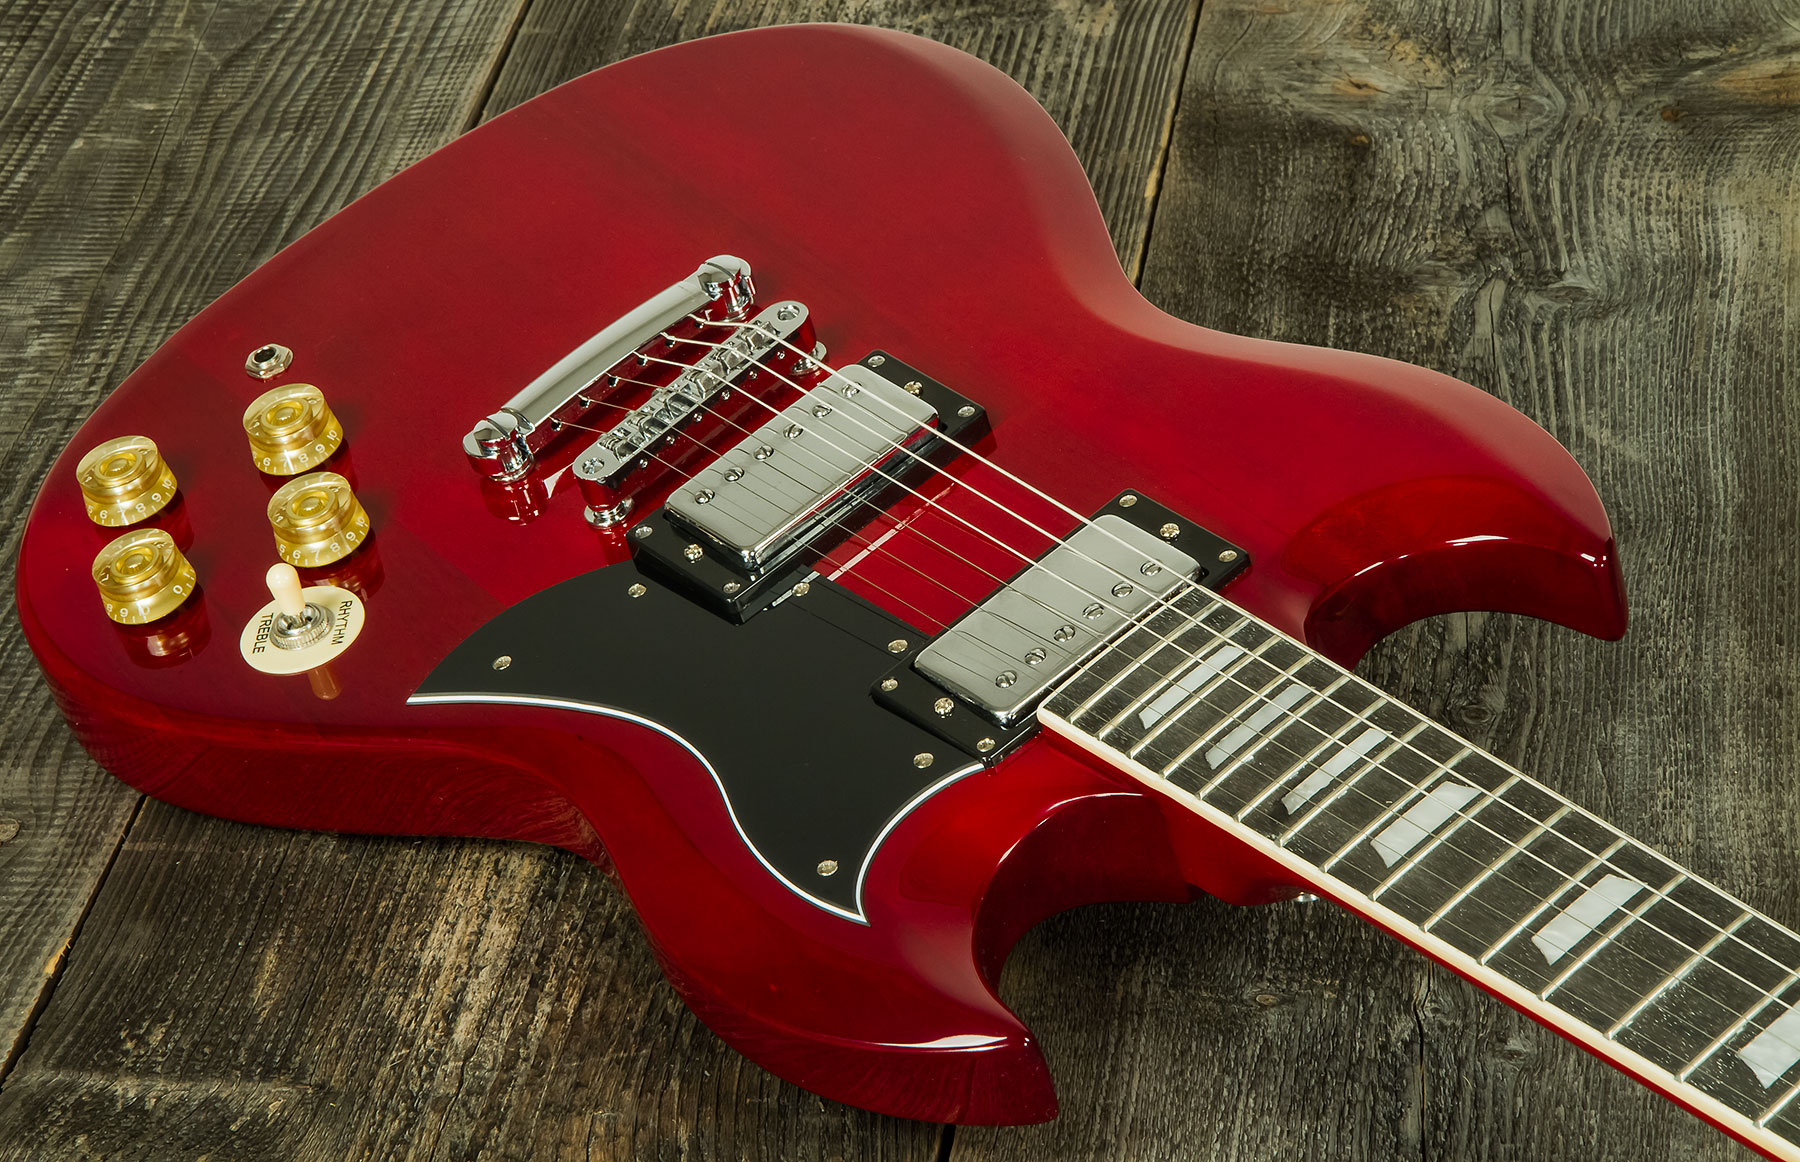 Eastone Sdc70 Hh Ht Pur - Red - Guitarra eléctrica de doble corte. - Variation 1